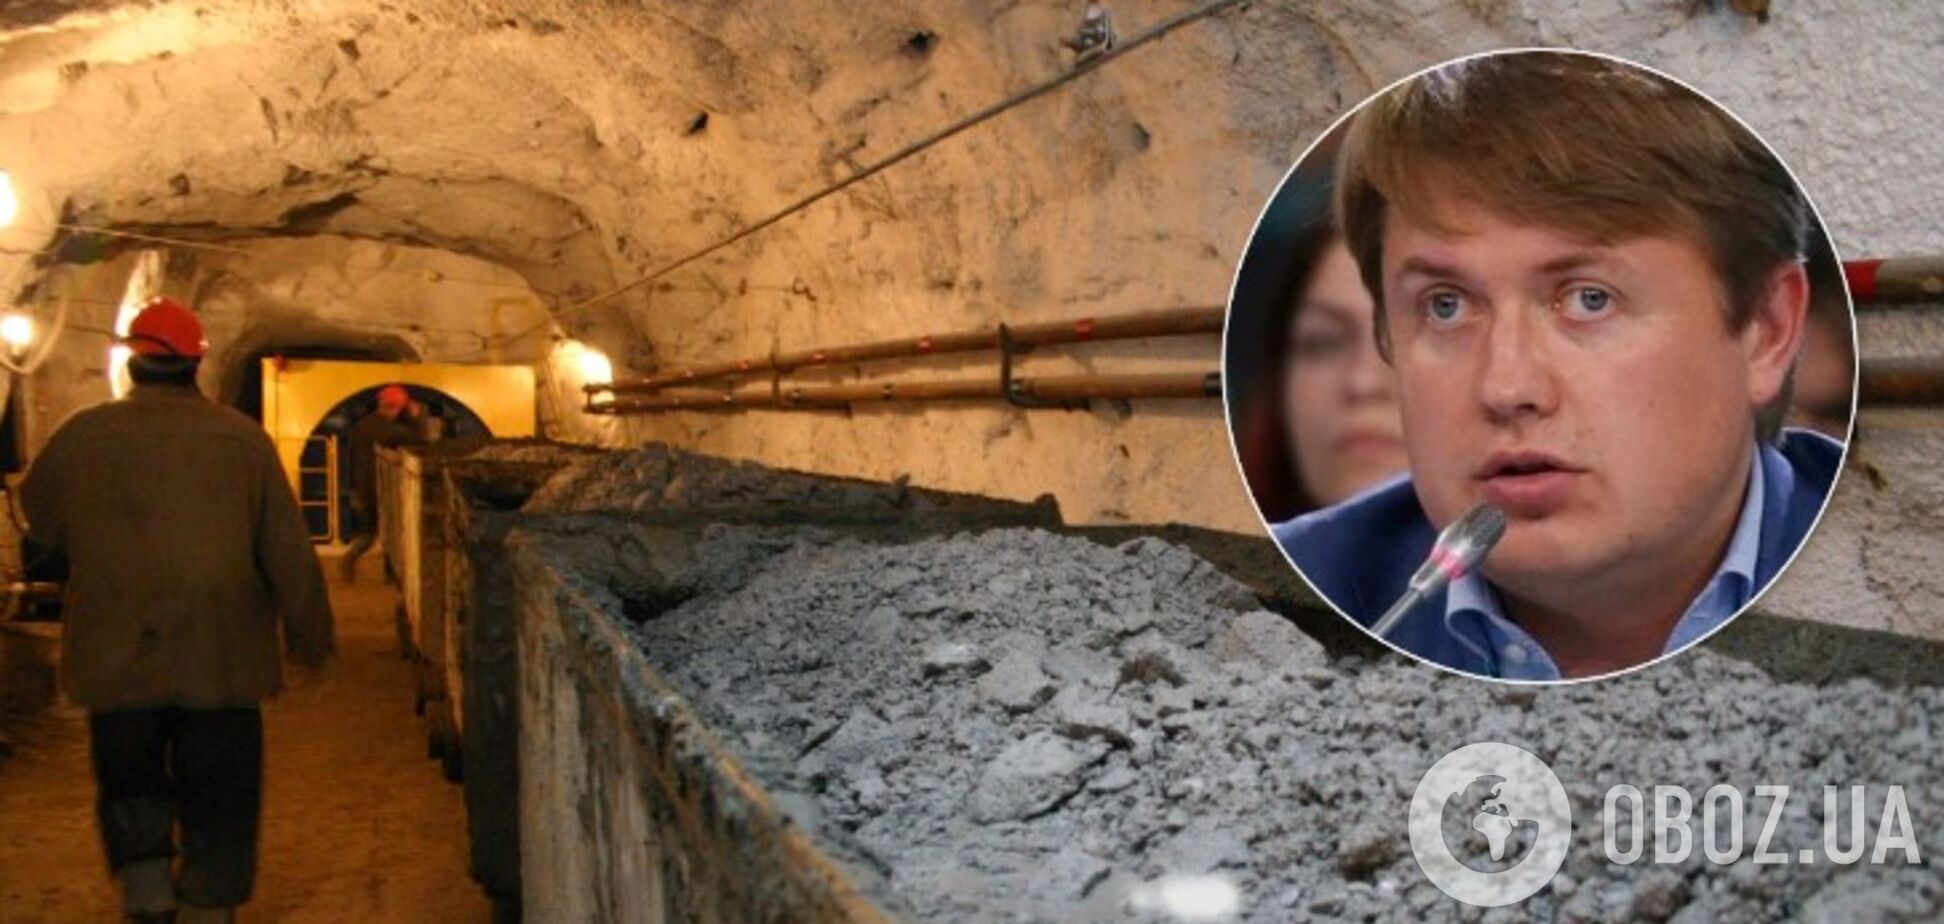 Герус очолив процес закриття шахт, але хоче уникнути відповідальності, – нардеп